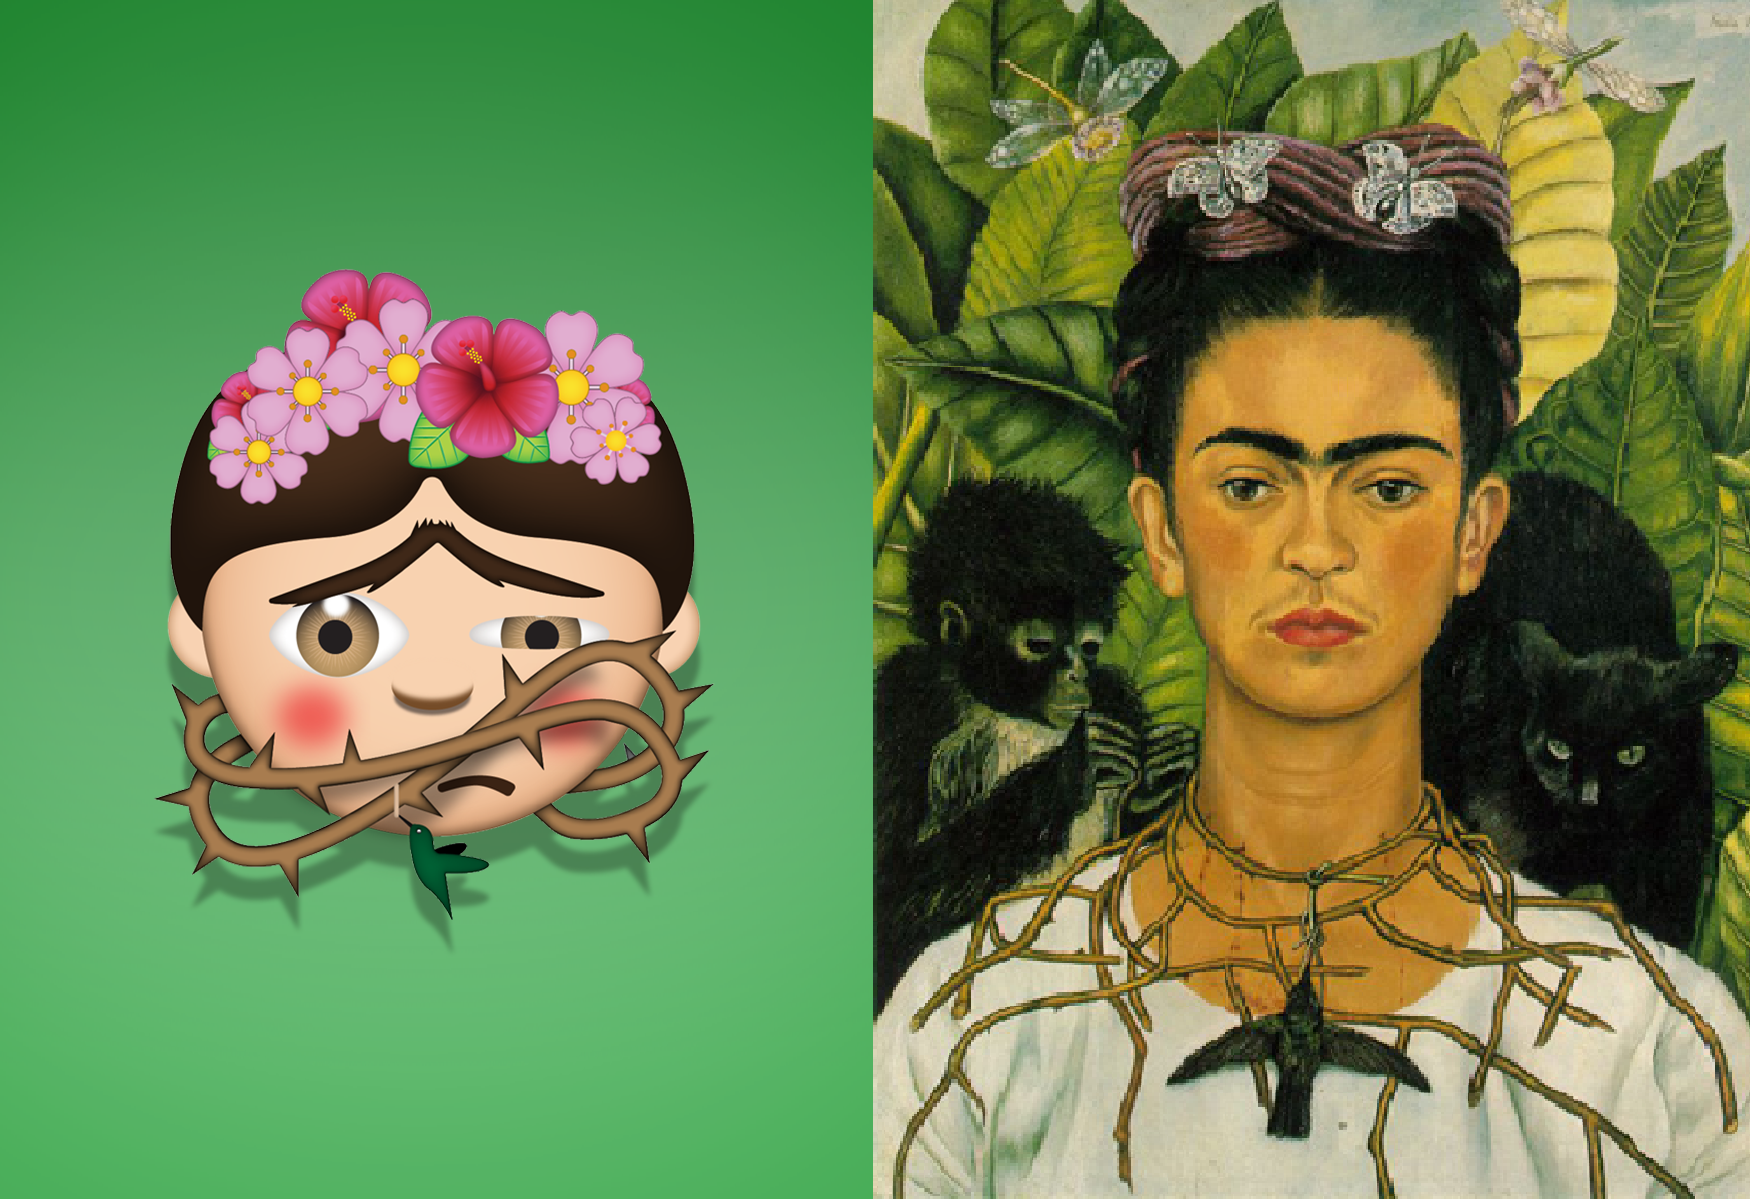 Vergleich FridaMoji und Frida Kahlos Selbstporträt